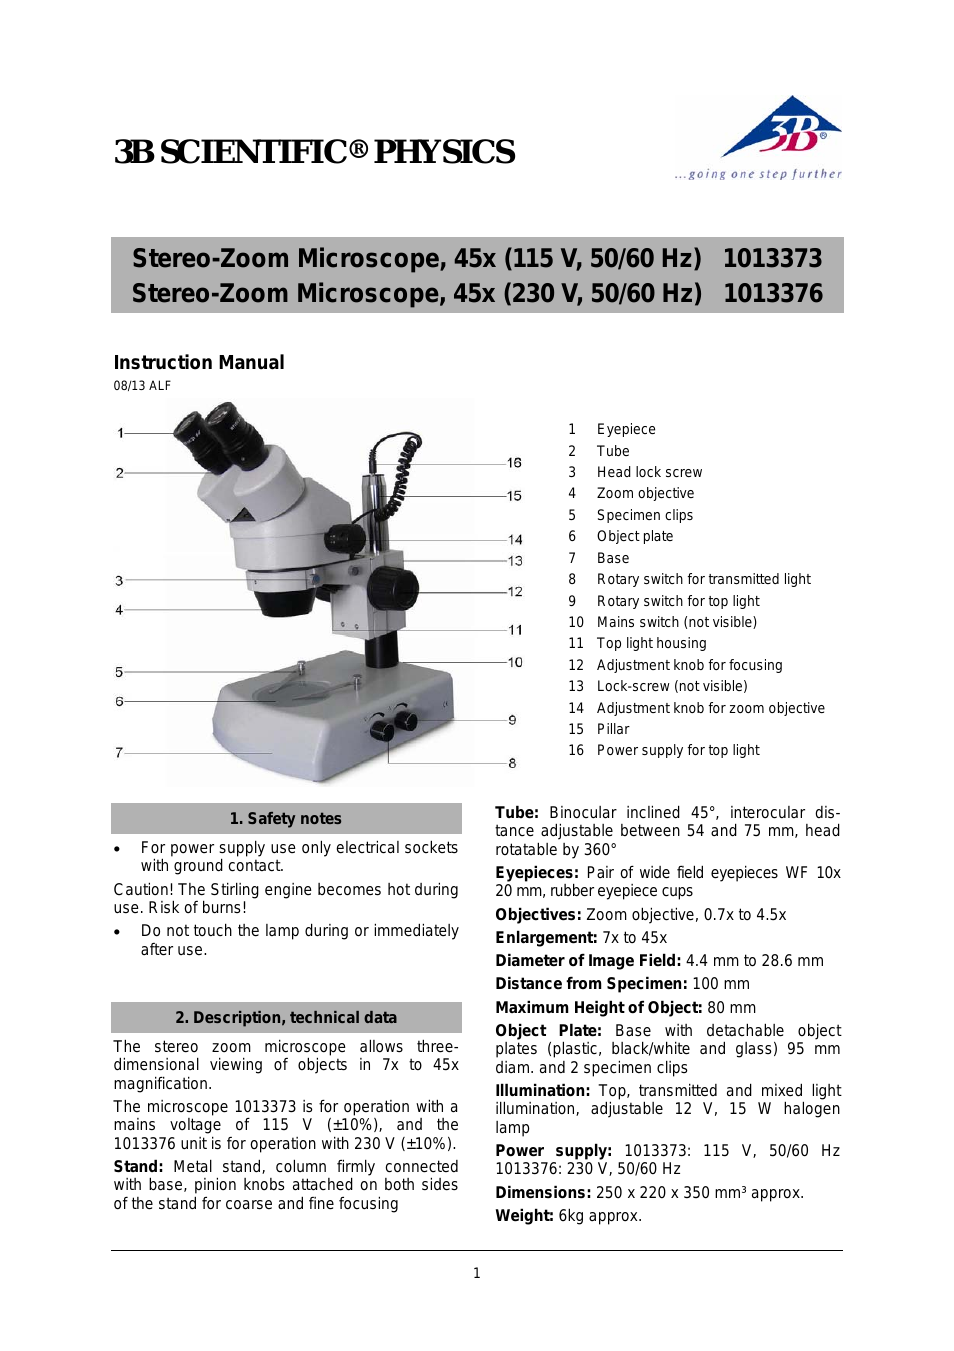 Stereo-Zoom Microscope, 45x (230 V, 50__60 Hz)